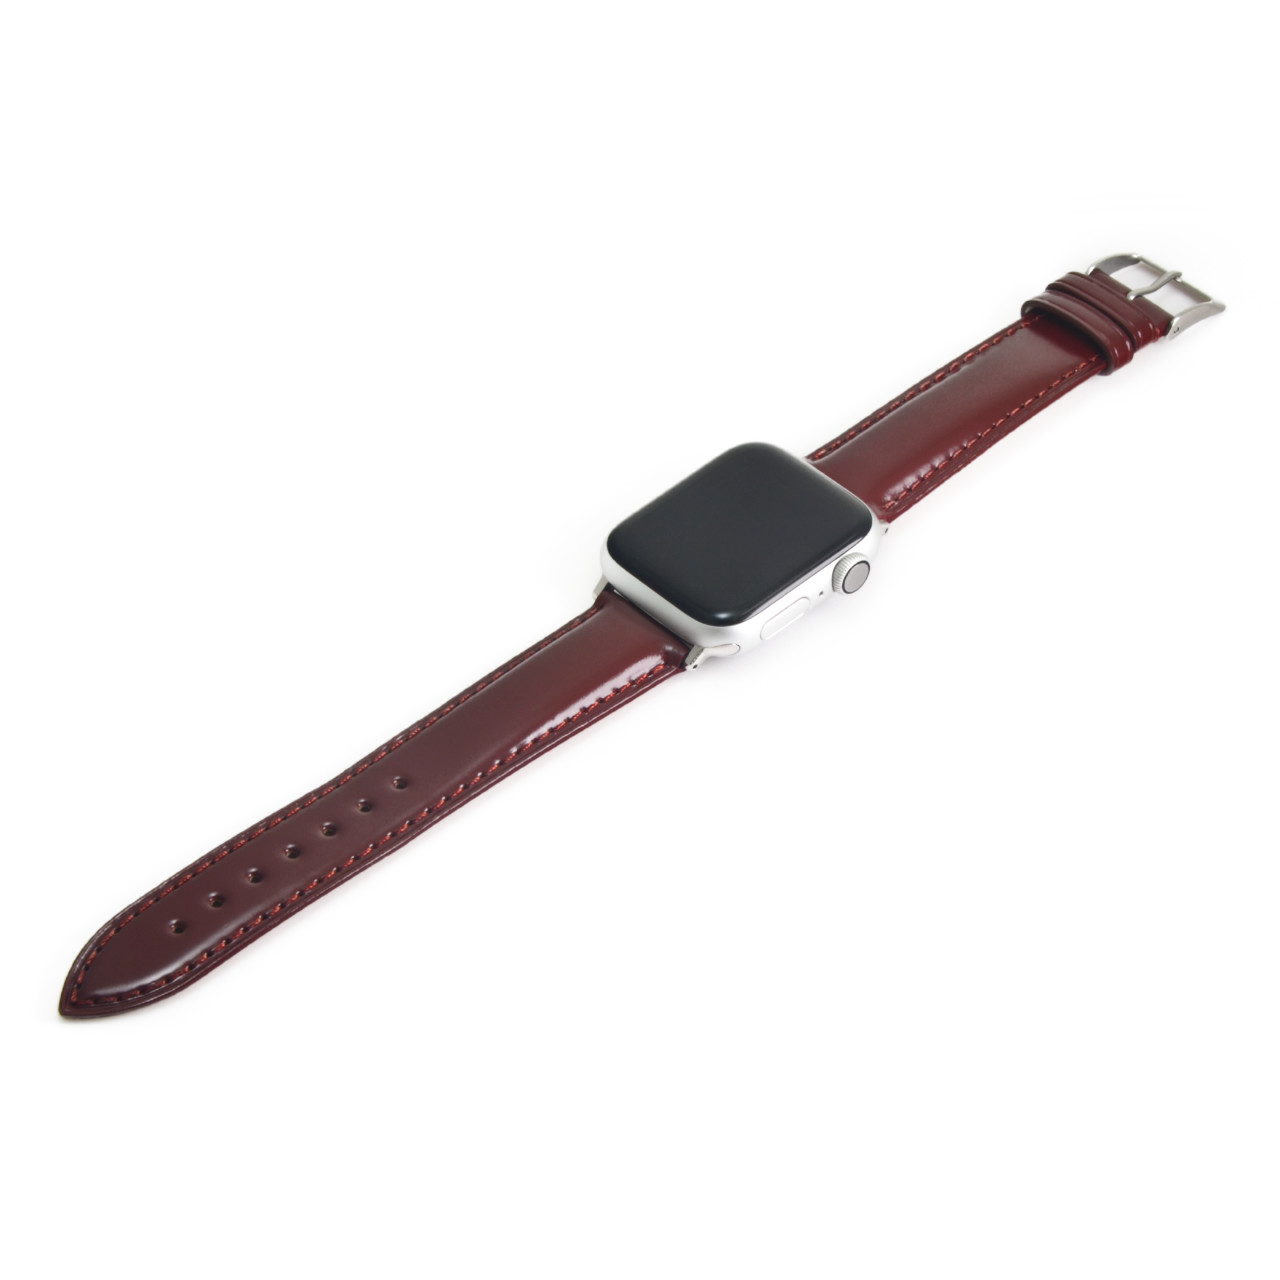 CORDOVAN For Apple Watch -アバロン フォーアップルウォッチ- | 腕時計ベルトブランドCASSIS カシス